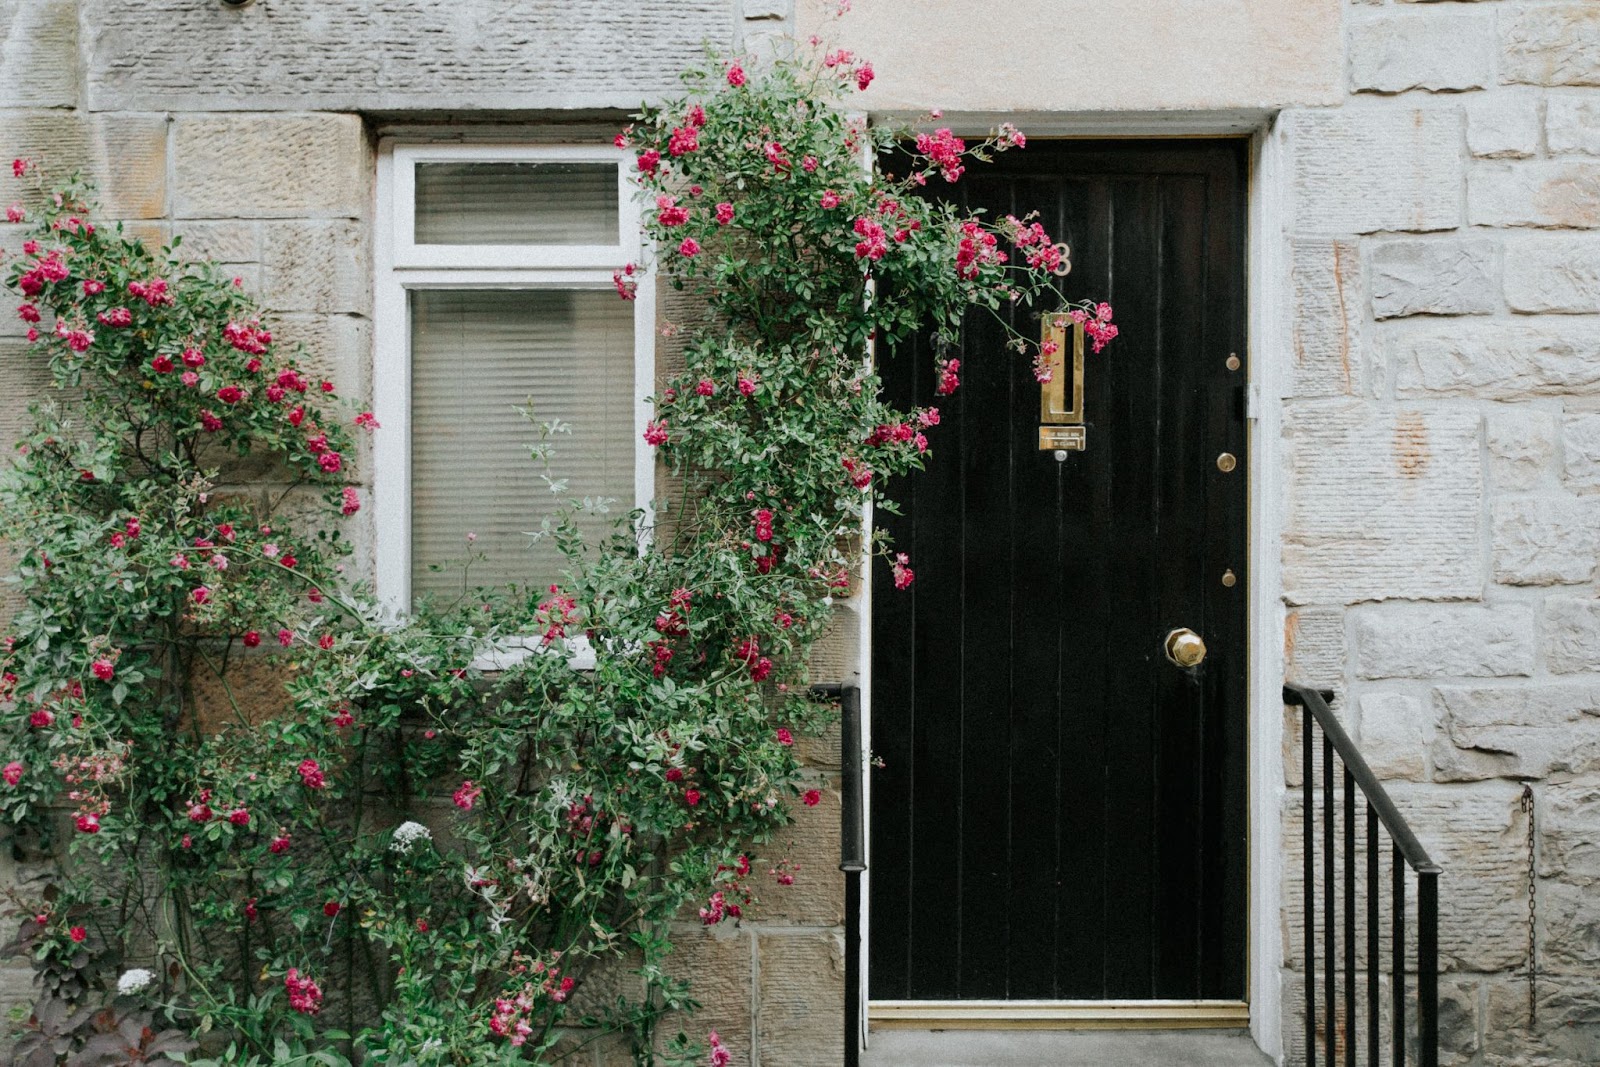 flowering vines on the front door - 
barndominium front door ideas